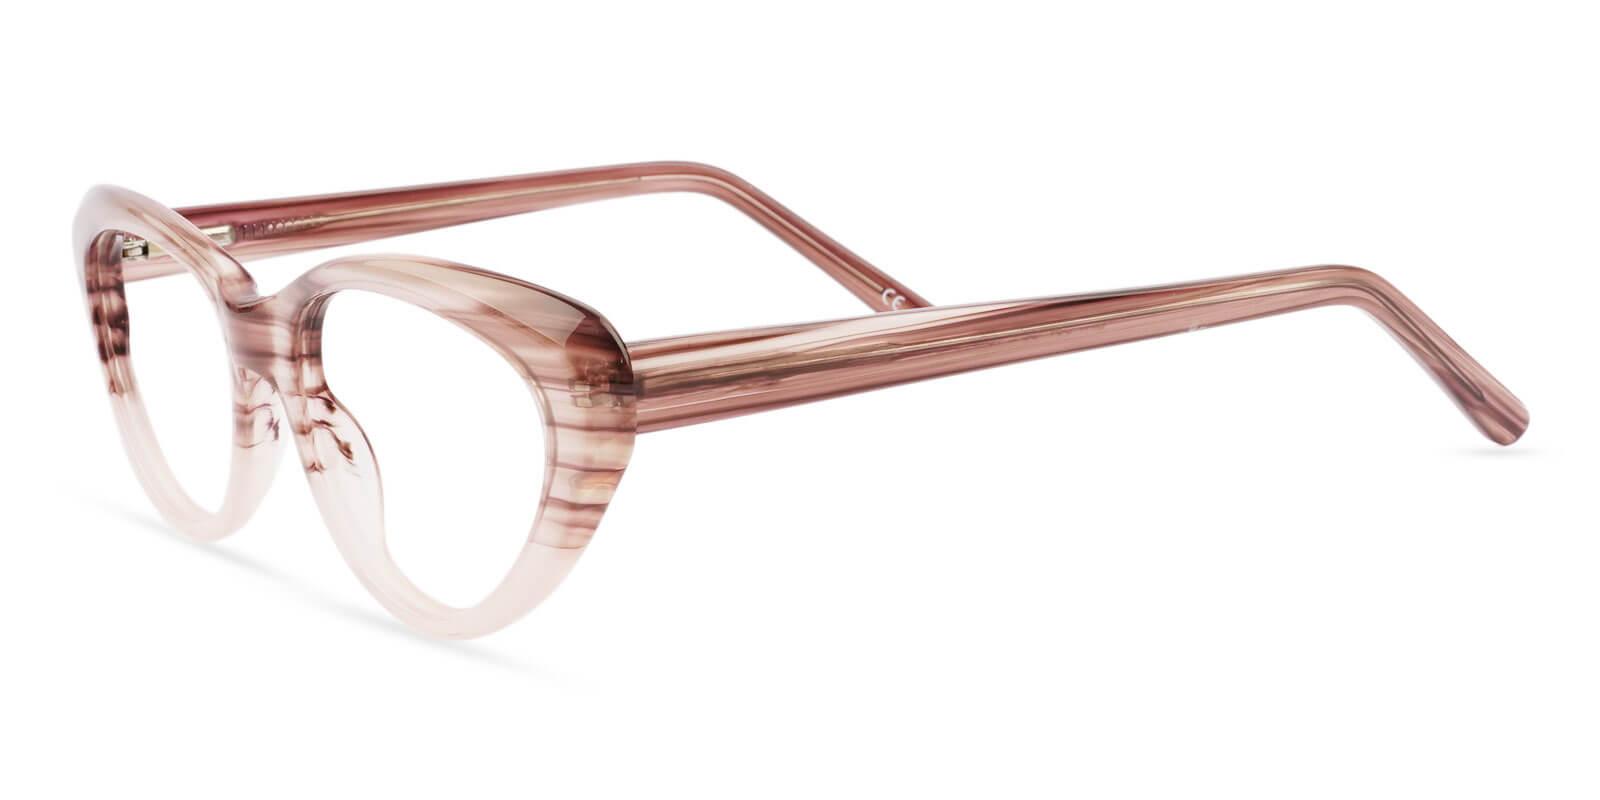 Irene Cream Acetate Eyeglasses , SpringHinges , UniversalBridgeFit Frames from ABBE Glasses